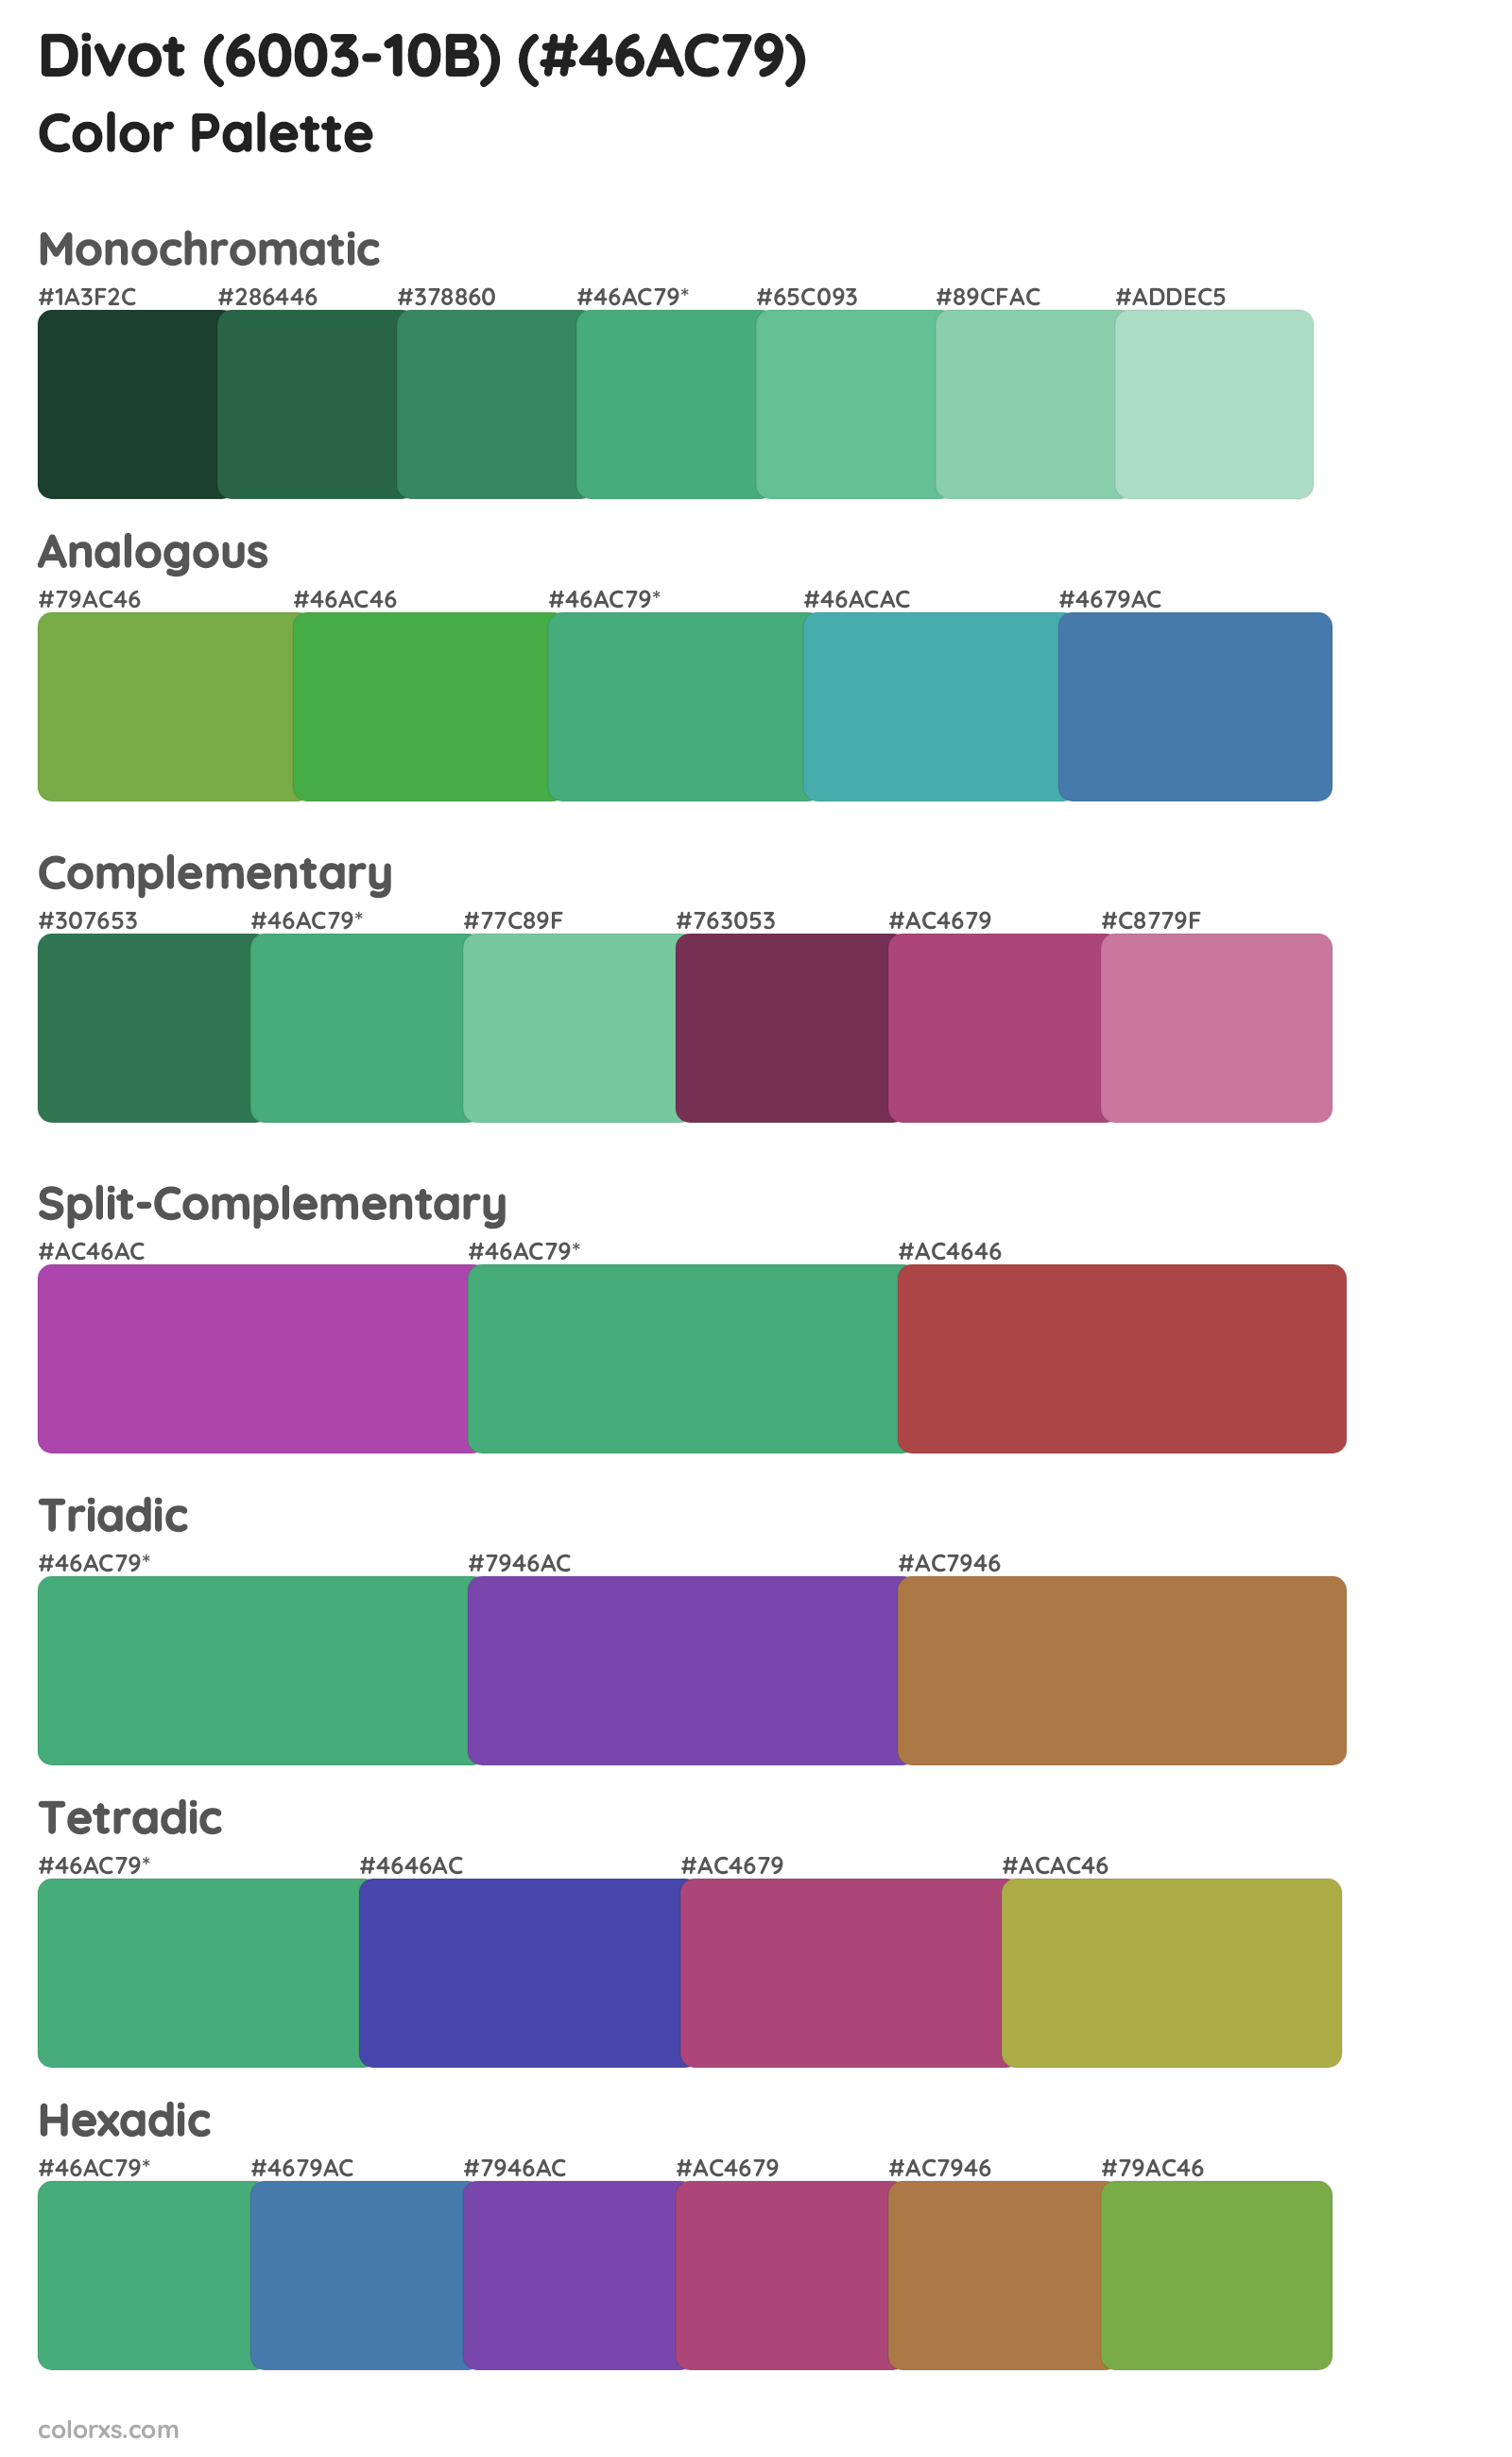 Divot (6003-10B) Color Scheme Palettes